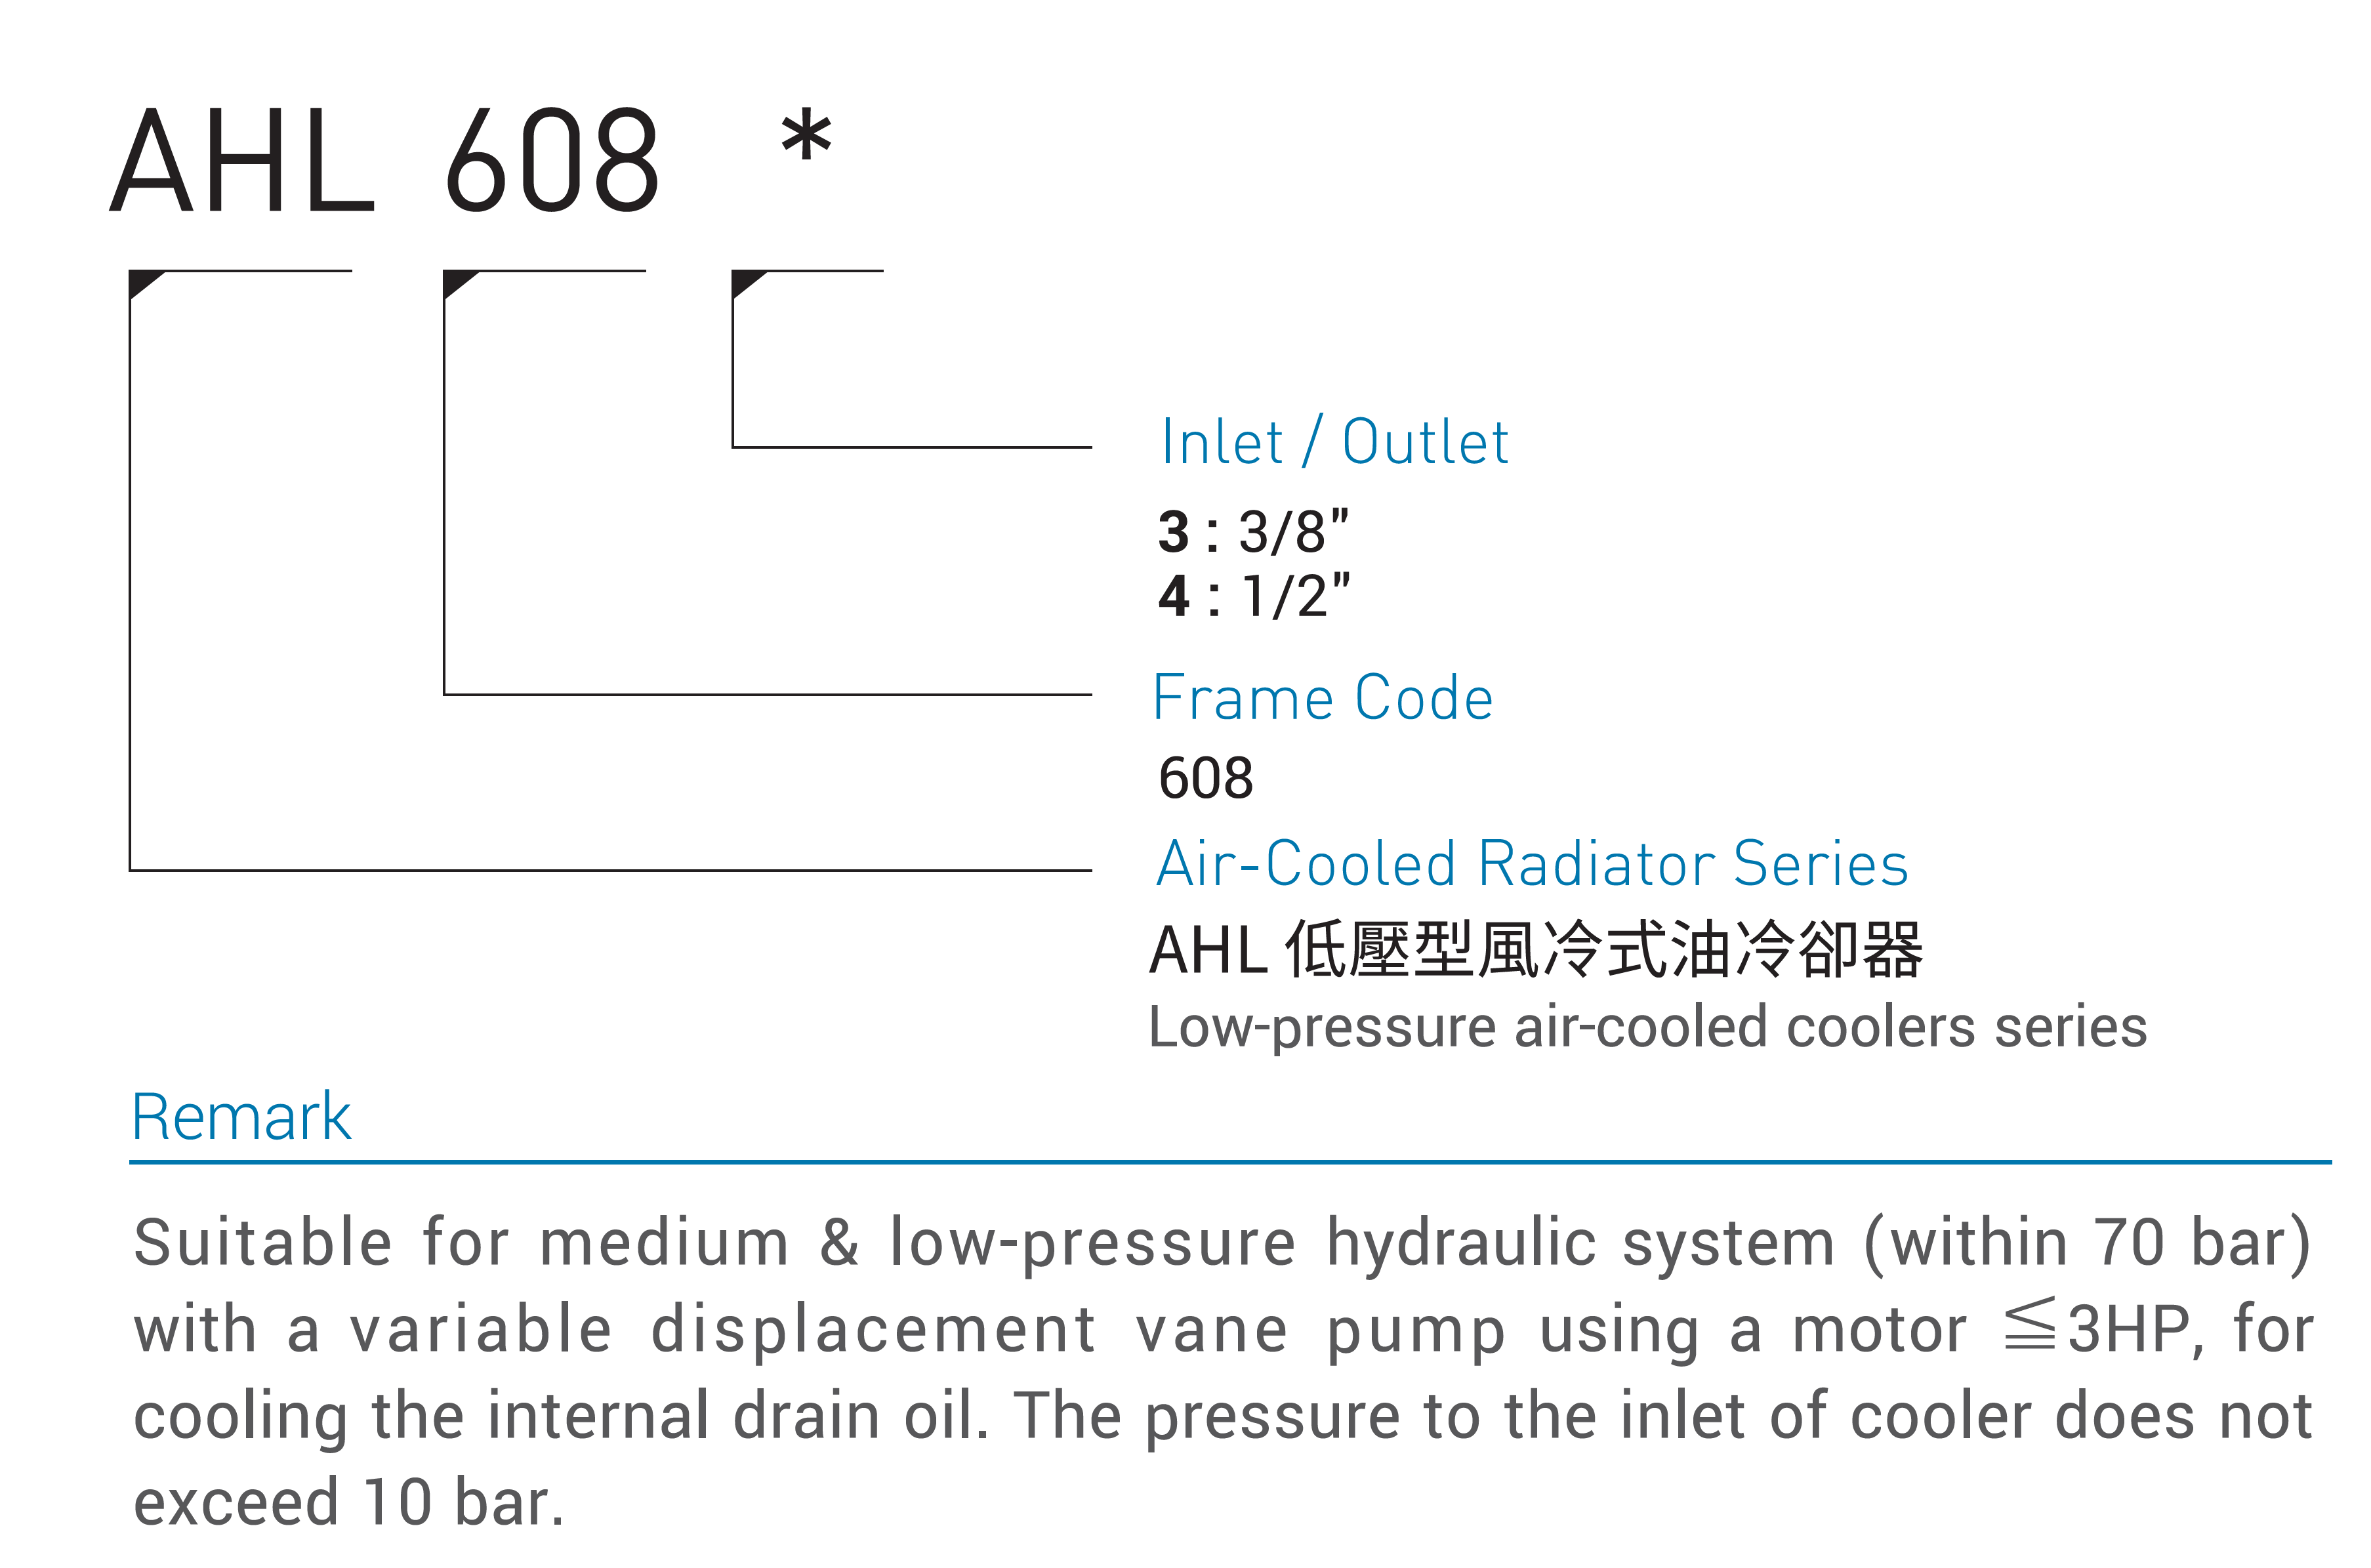 CML Low pressionem generis Aeris refrigeratum Radiator Codicis Model, Quomodo iubes